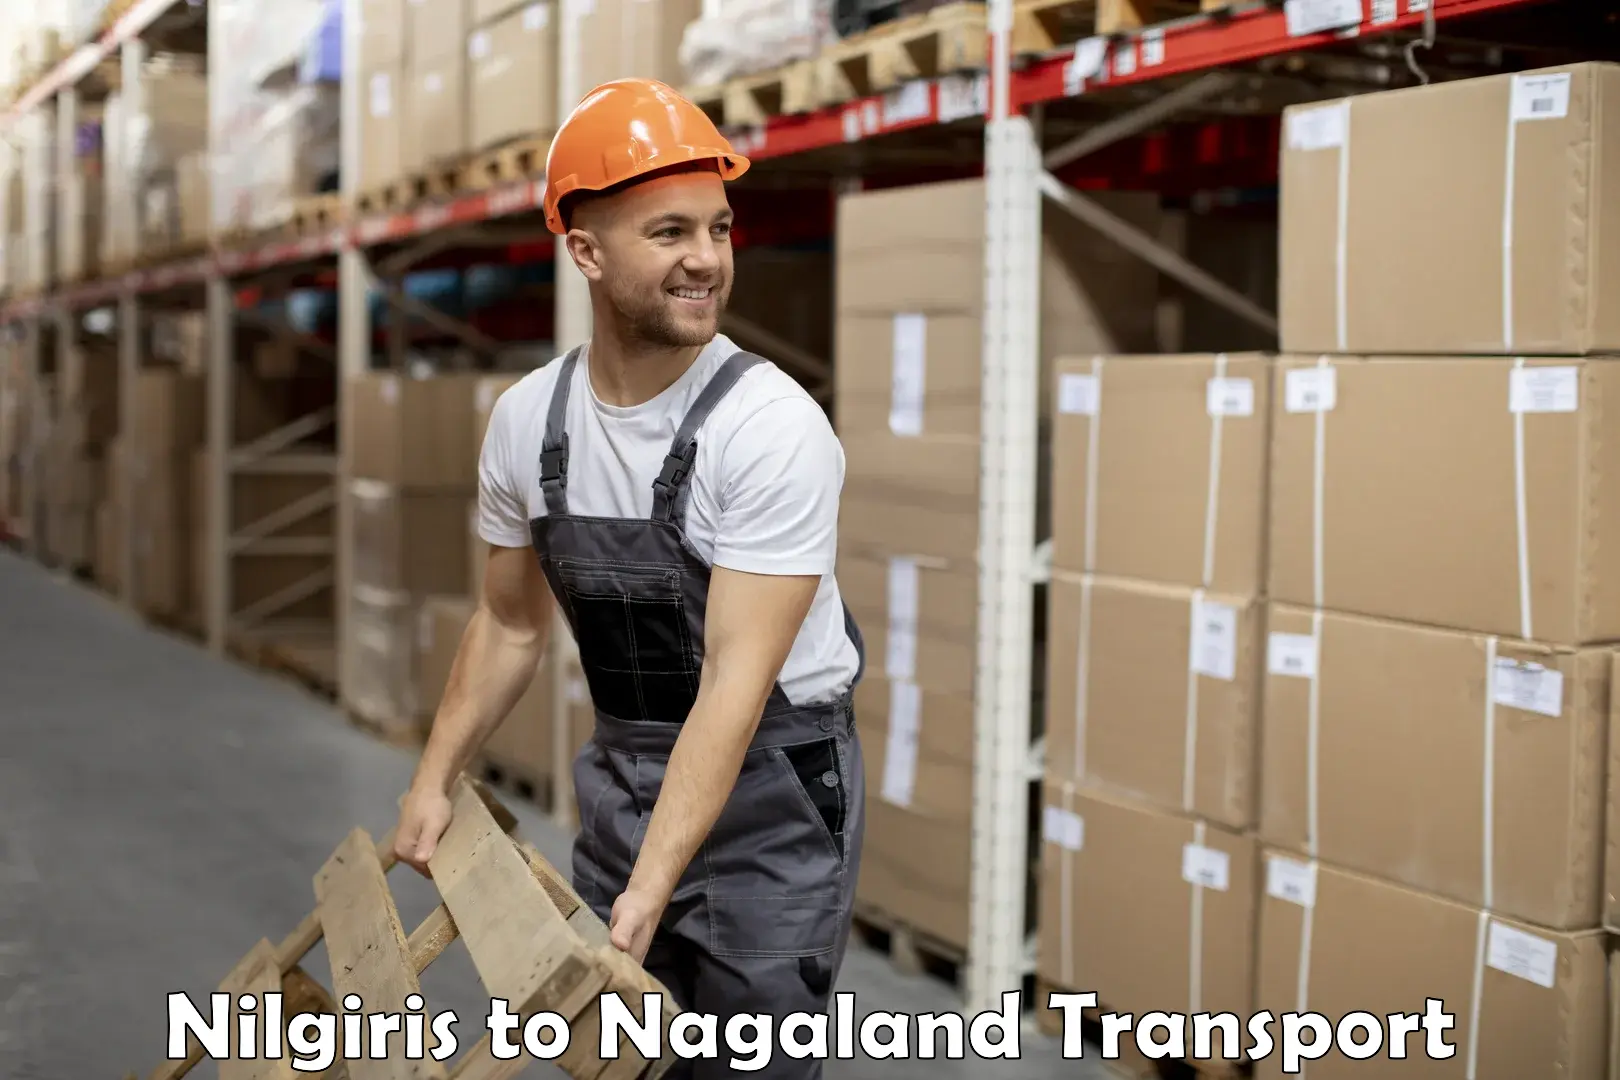 Shipping partner Nilgiris to NIT Nagaland